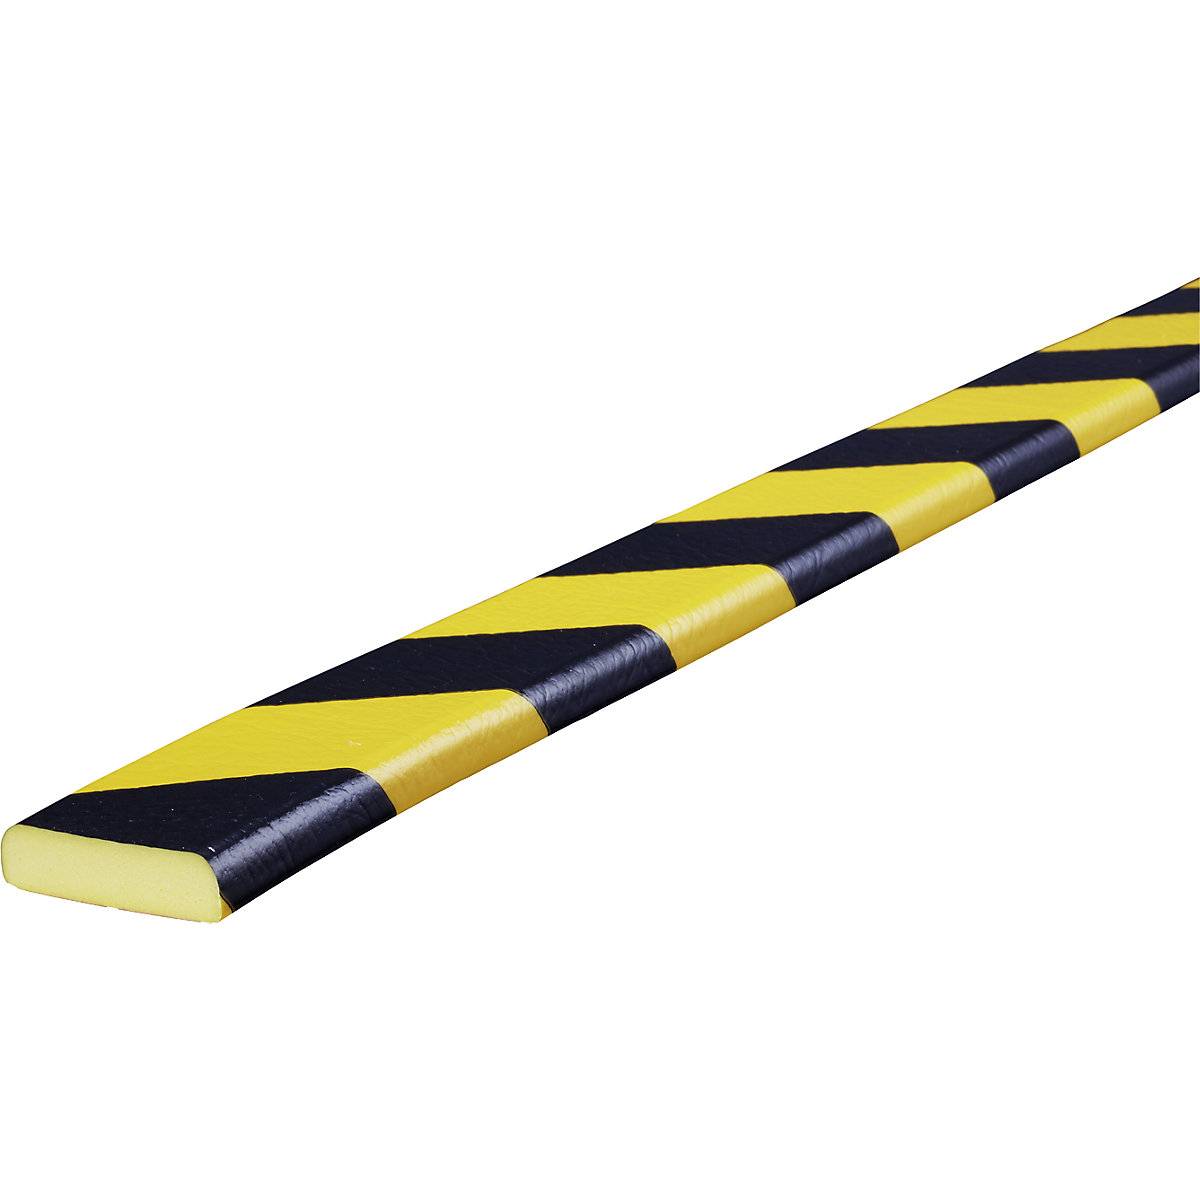 Proteção de superfícies Knuffi® – SHG, tipo F, 1 rolo de 5 m, preto/amarelo-26